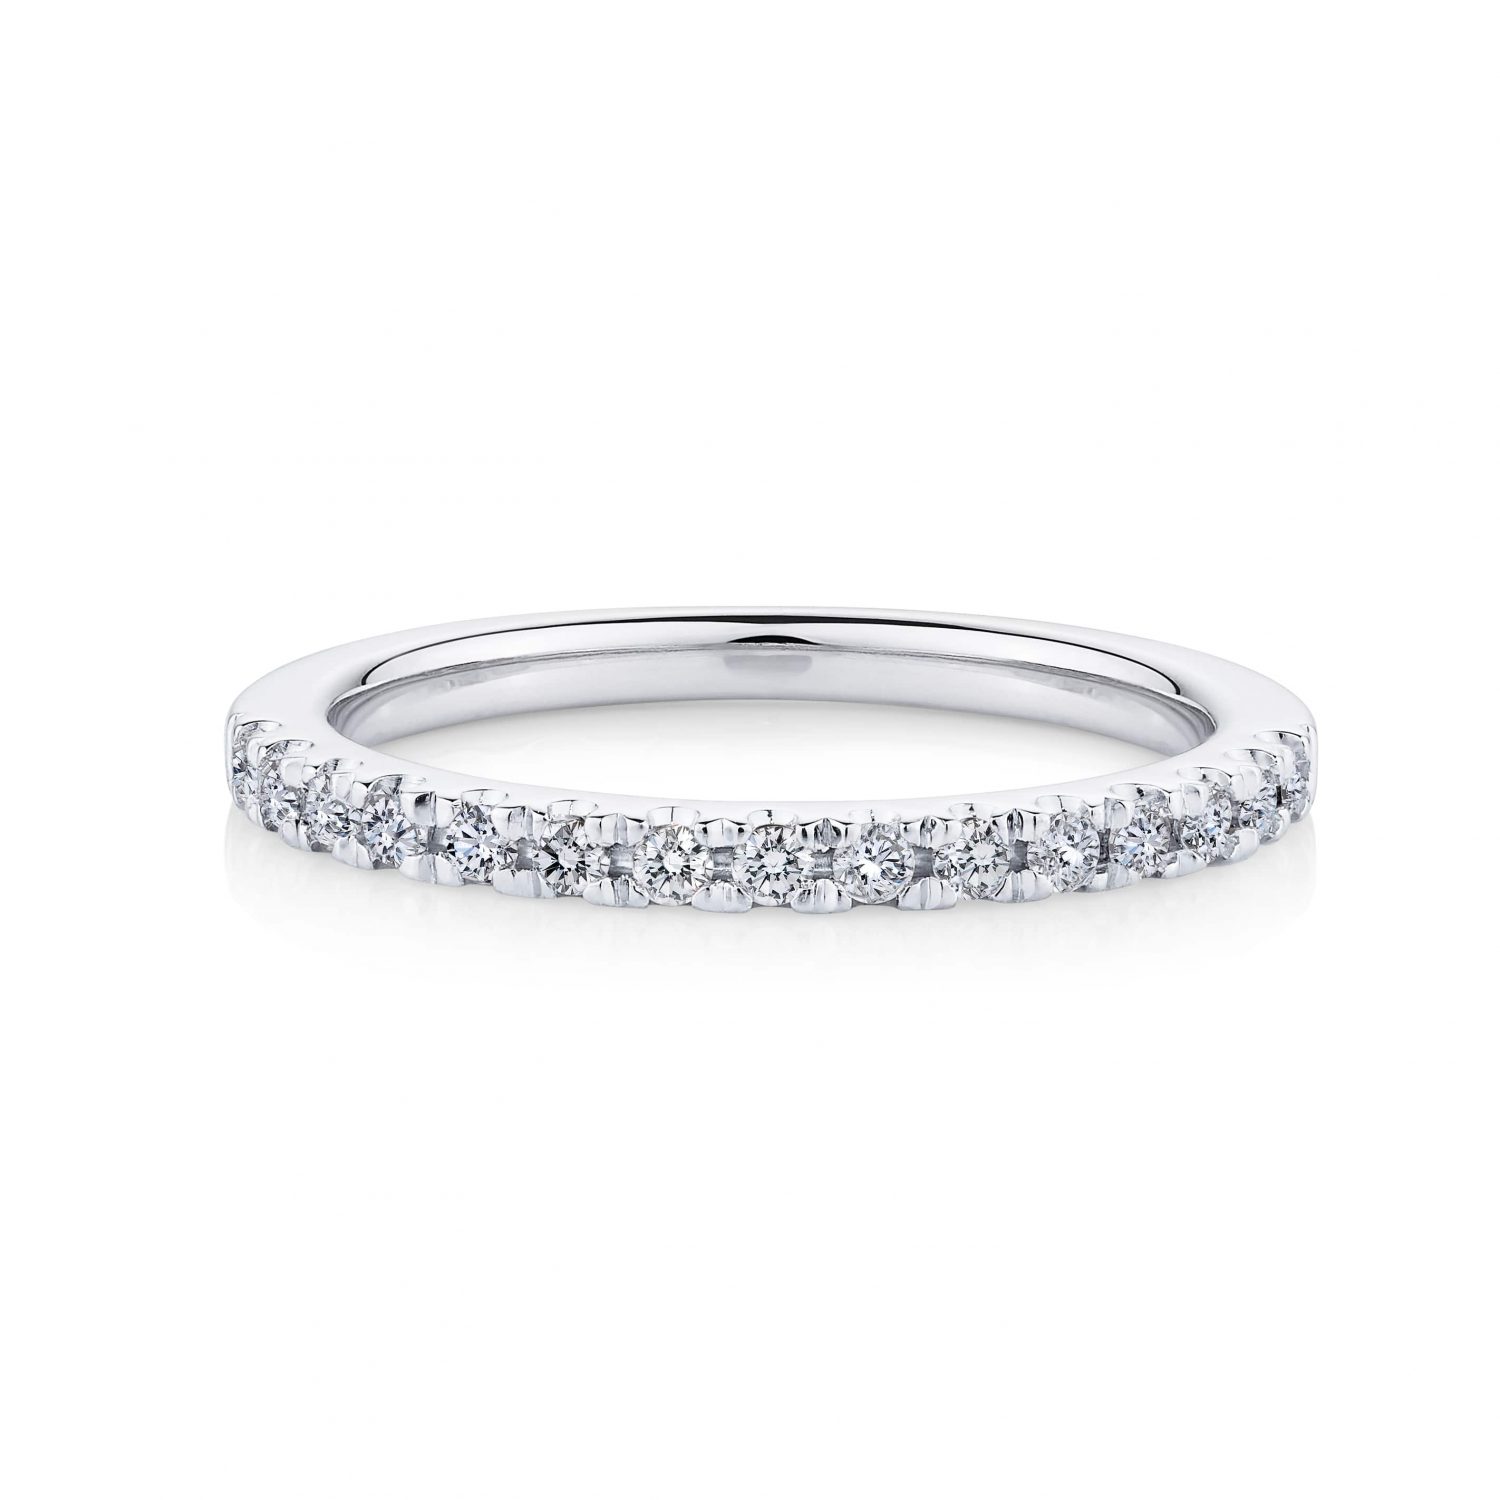 Buy Fancy Cluster Diamond Ring Online | Fineline Jewellers